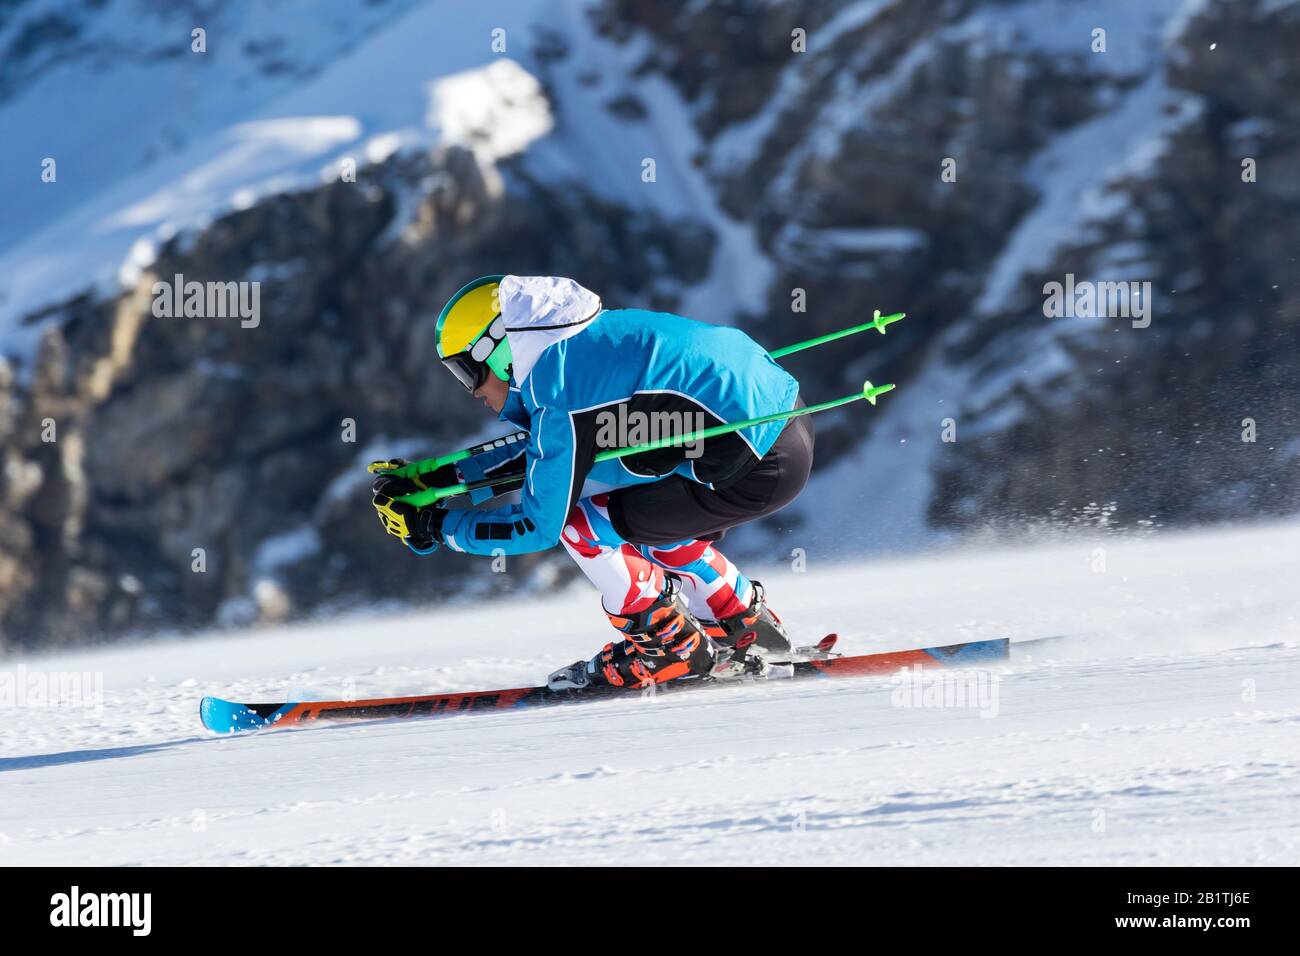 athlète en compétition de ski alpin Banque D'Images